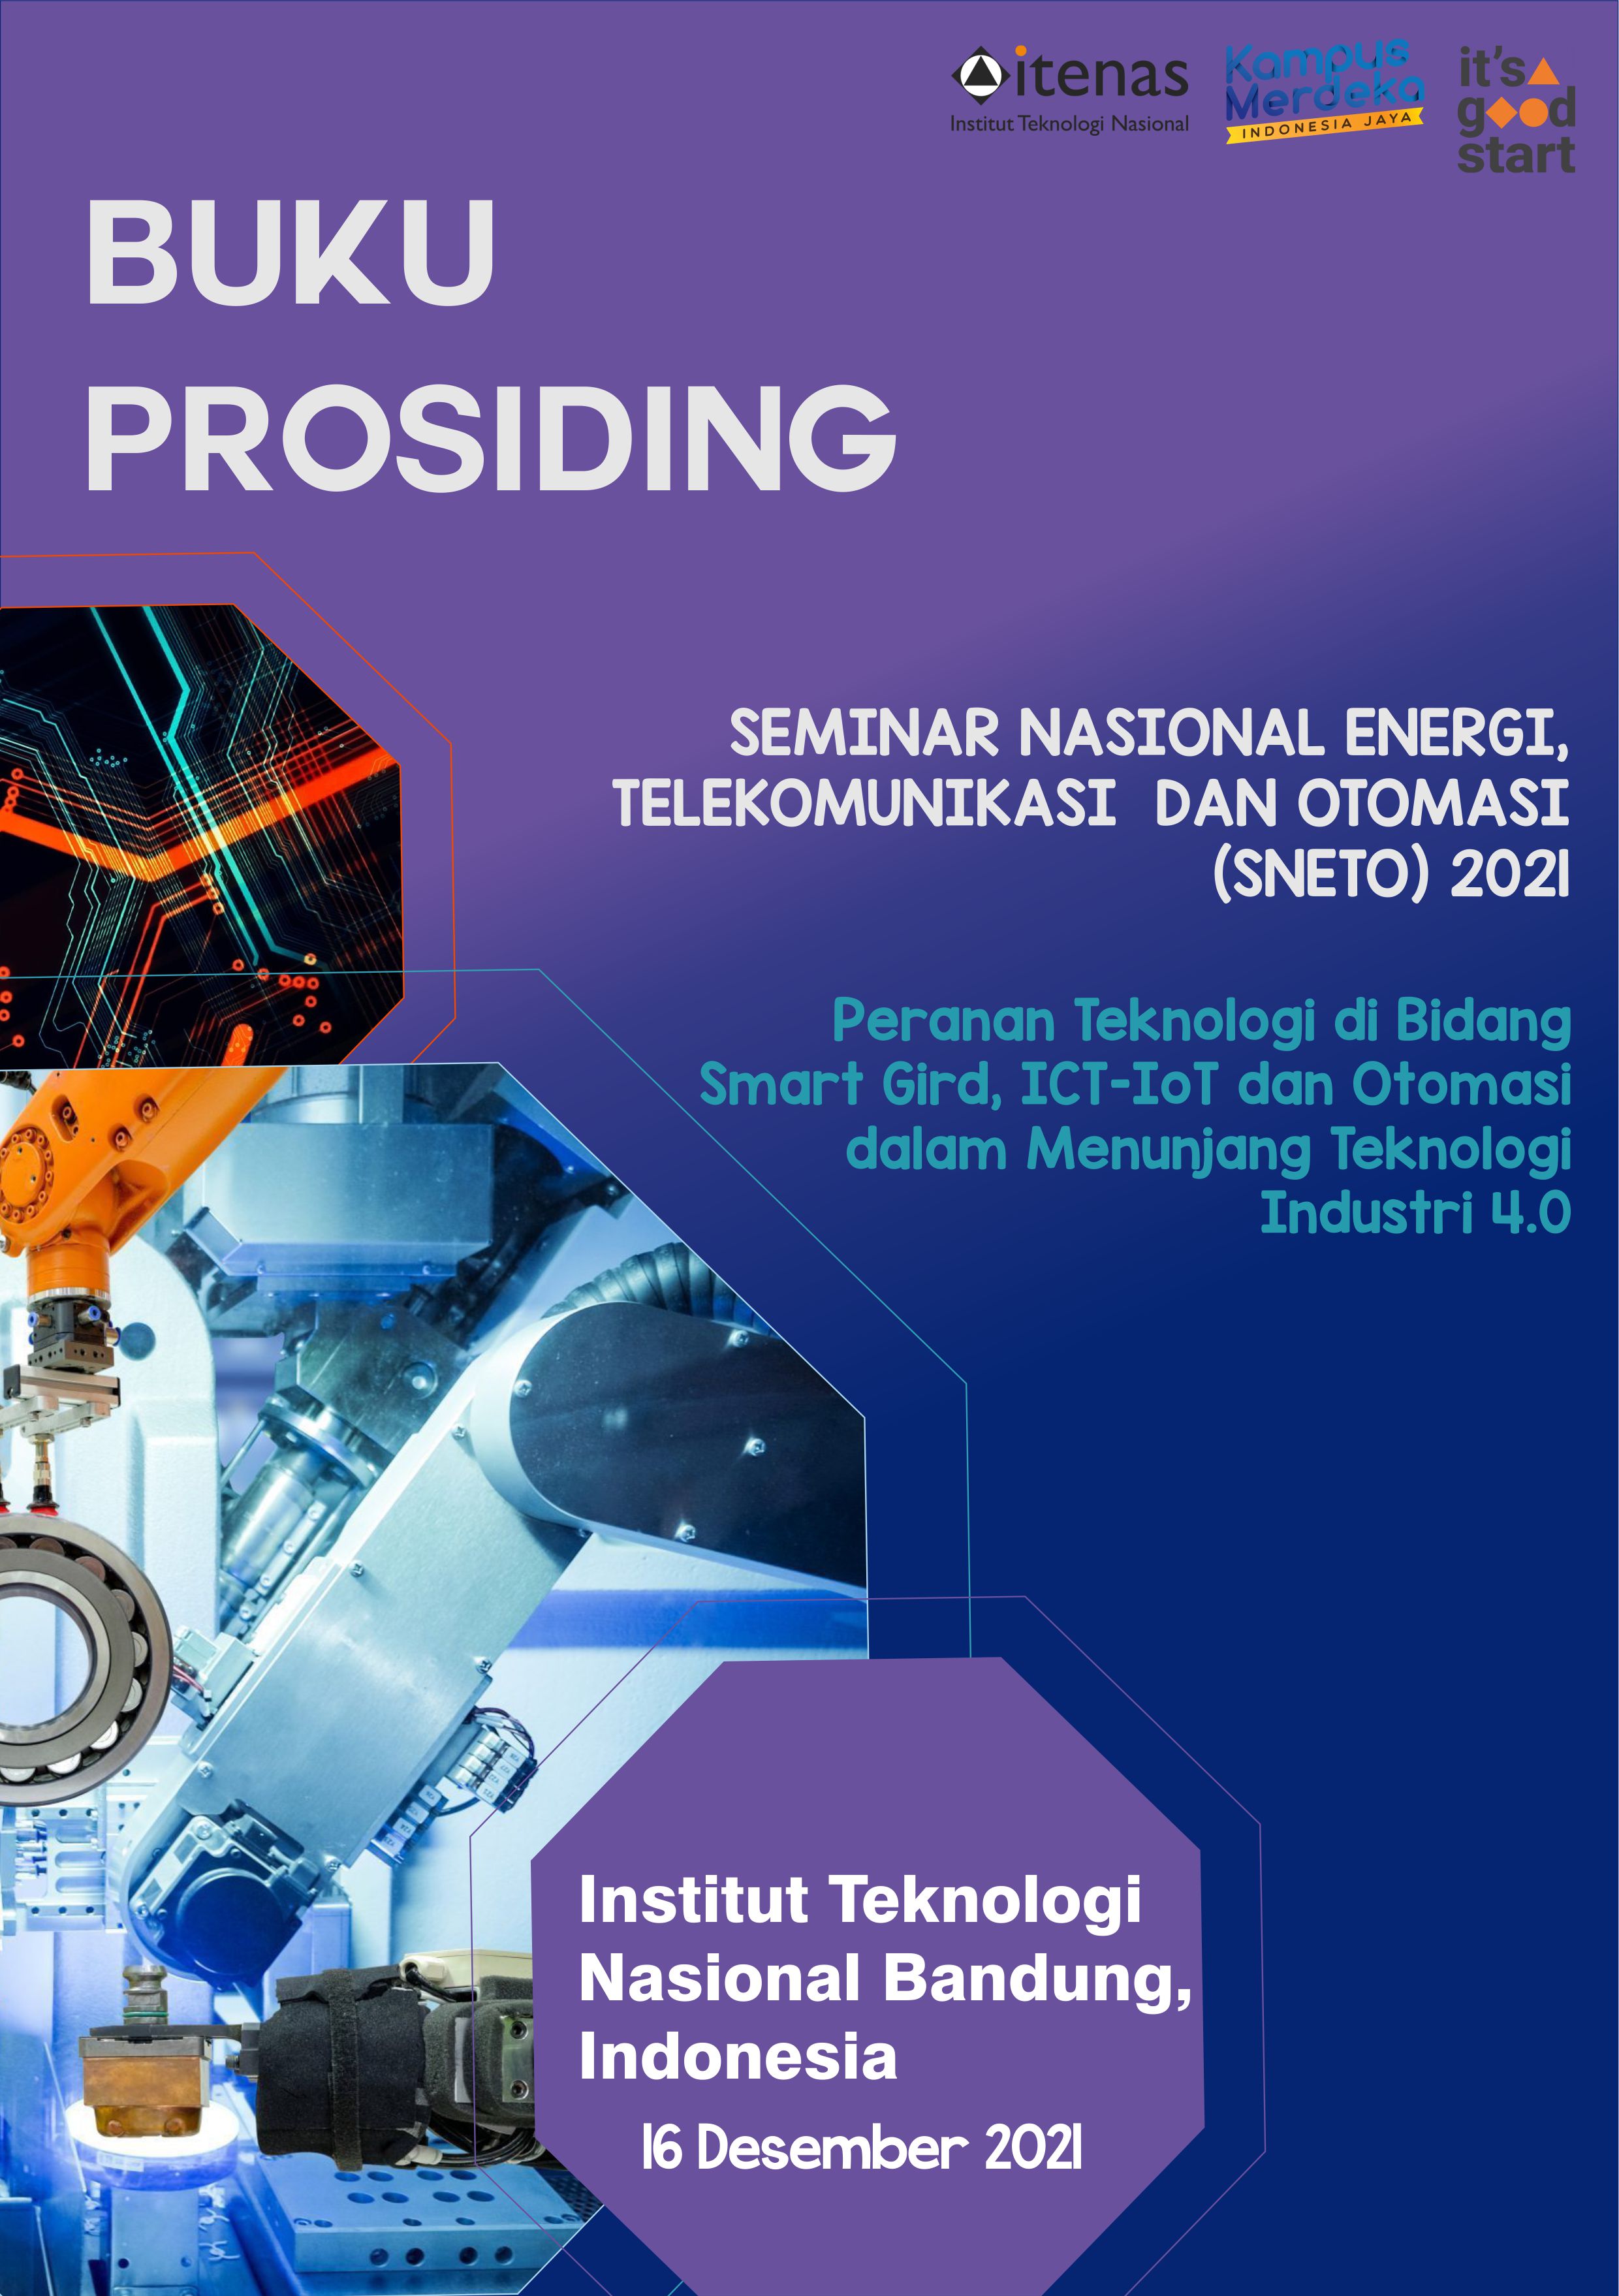 					Lihat Seminar Nasional Energi Telekomunikasi dan Otomasi (SNETO) 2021
				